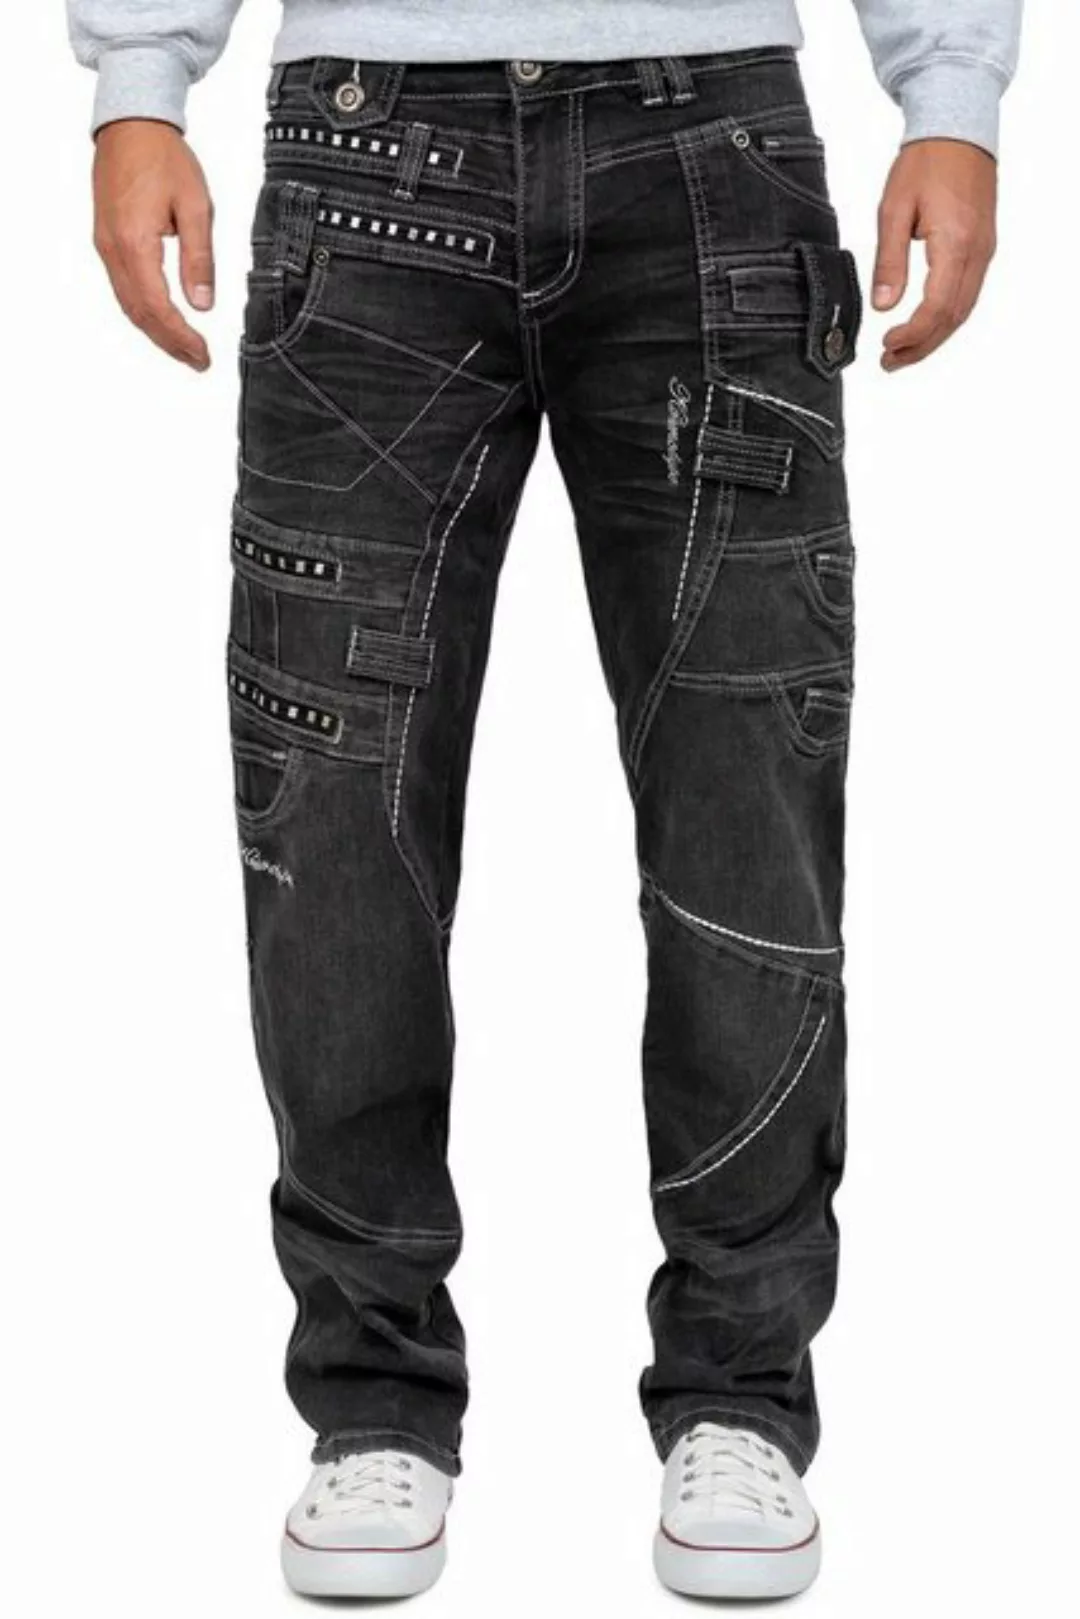 Kosmo Lupo 5-Pocket-Jeans Auffällige Herren Hose BA-KM001-2 Grau W34/L34 (1 günstig online kaufen